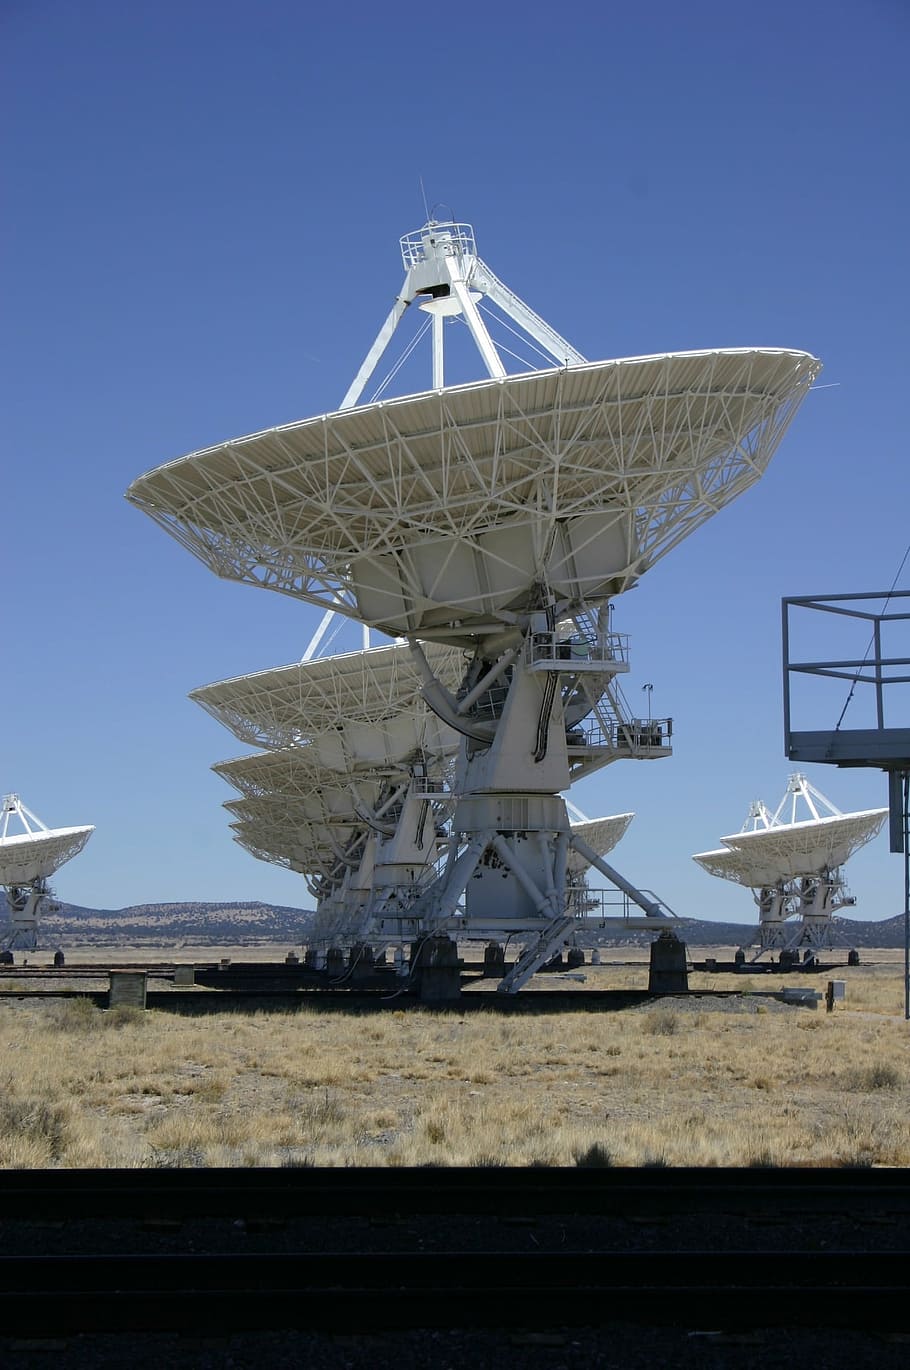 tecnologia, radiotelescópio, prato, antena, astronomia, astrofísica, céu, satélite, antena parabólica, equipamento de telecomunicações